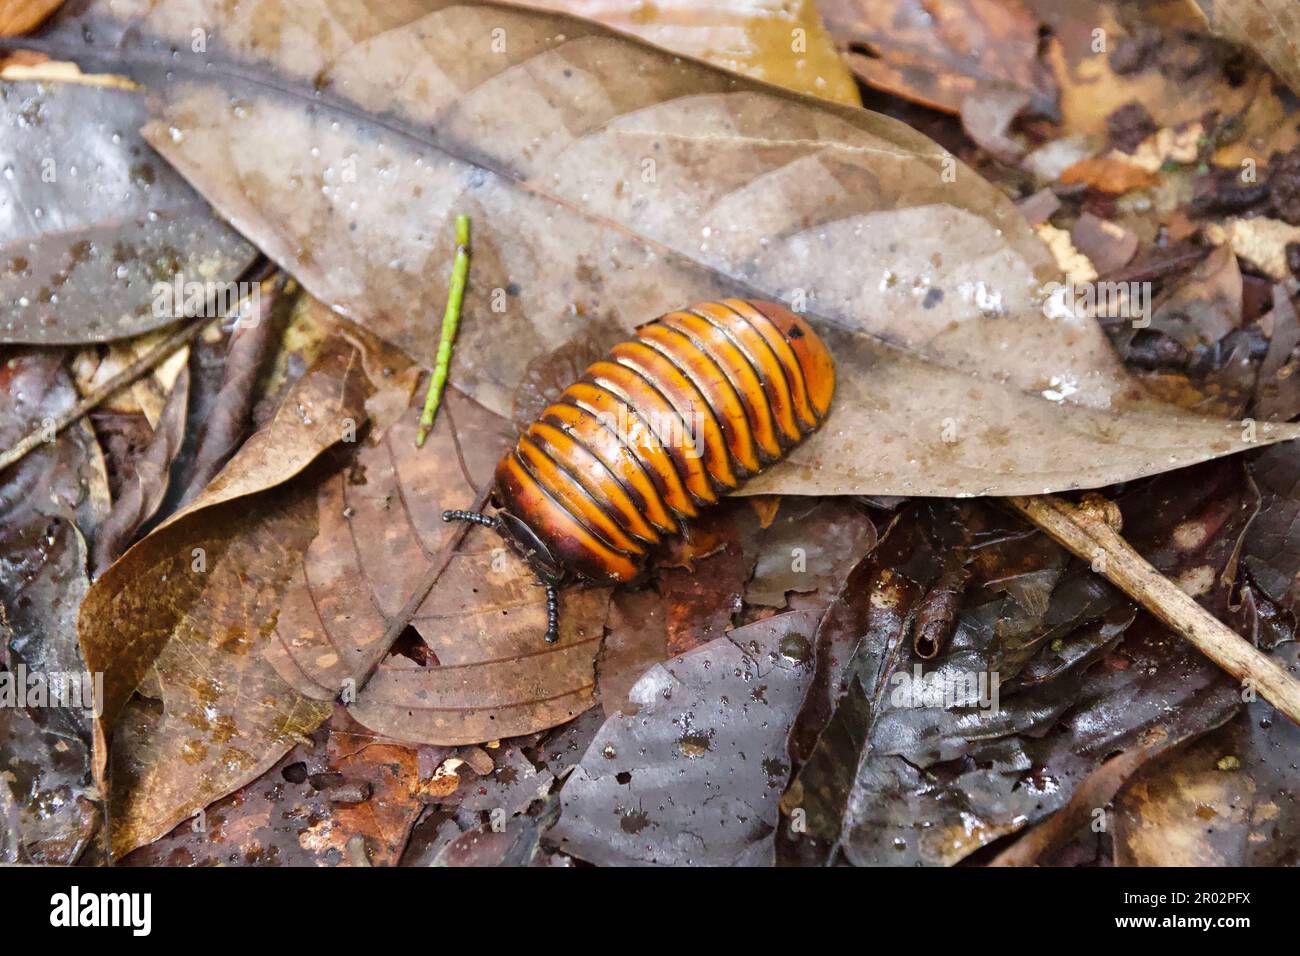 Pilule millipede sur les feuilles brunes à Bornéo Banque D'Images